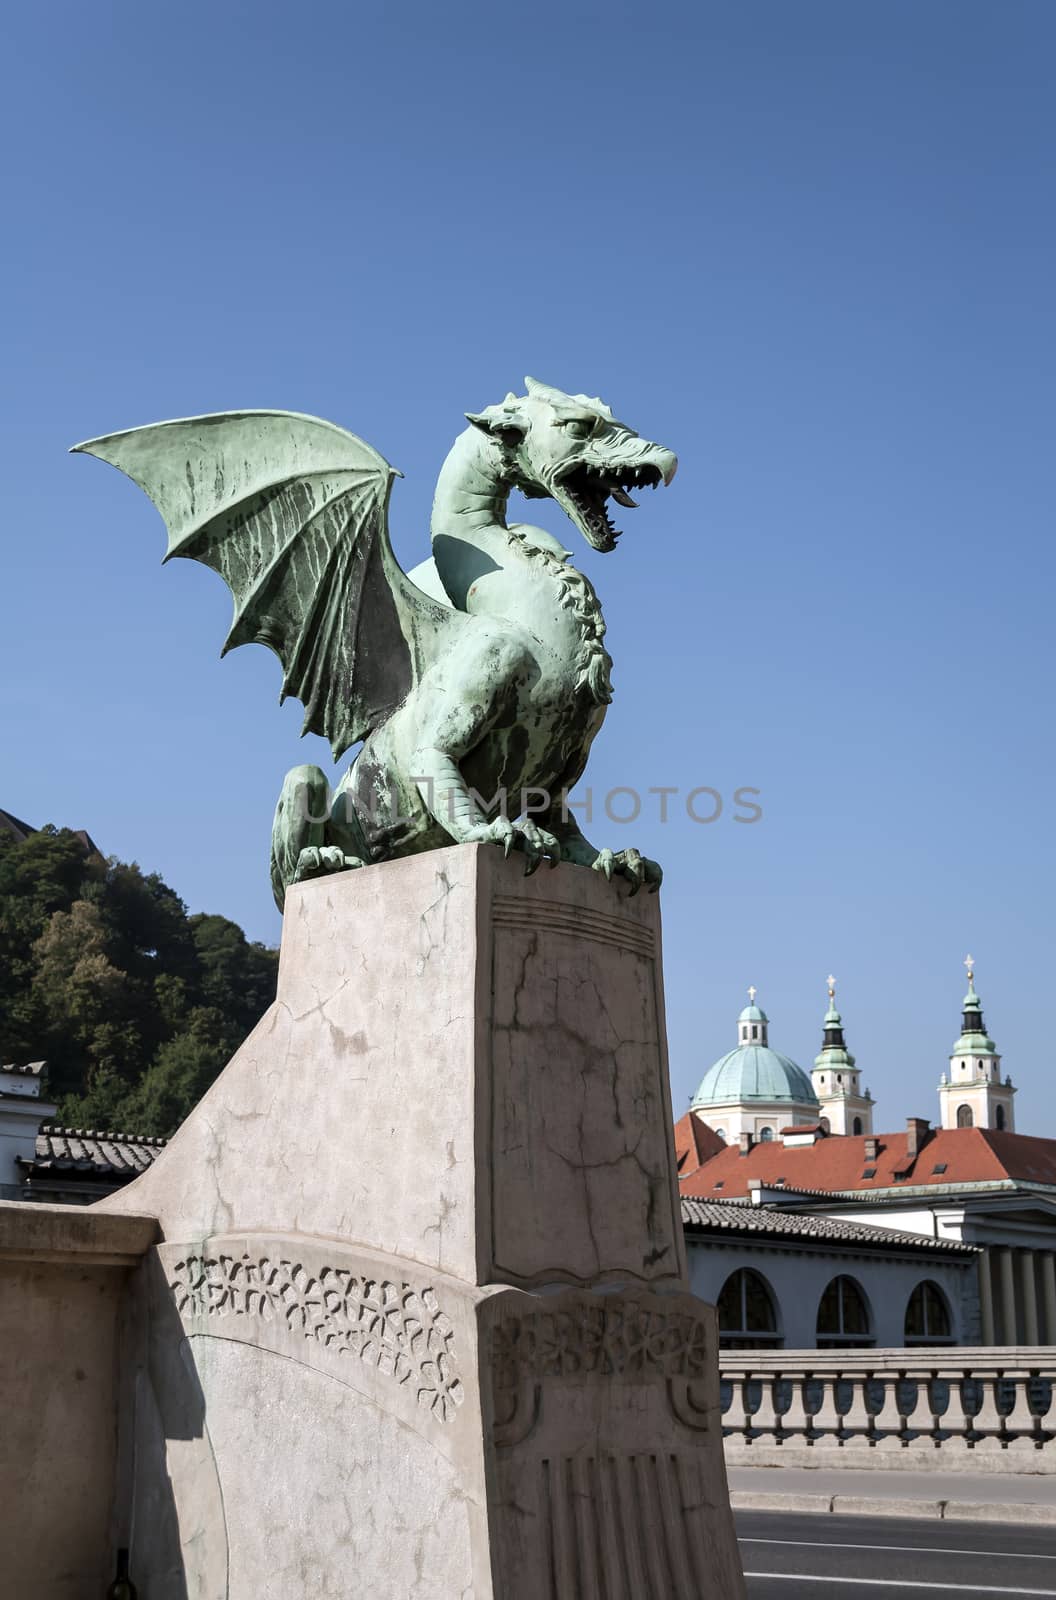 Dragon Bridge, Ljubljana. by FER737NG